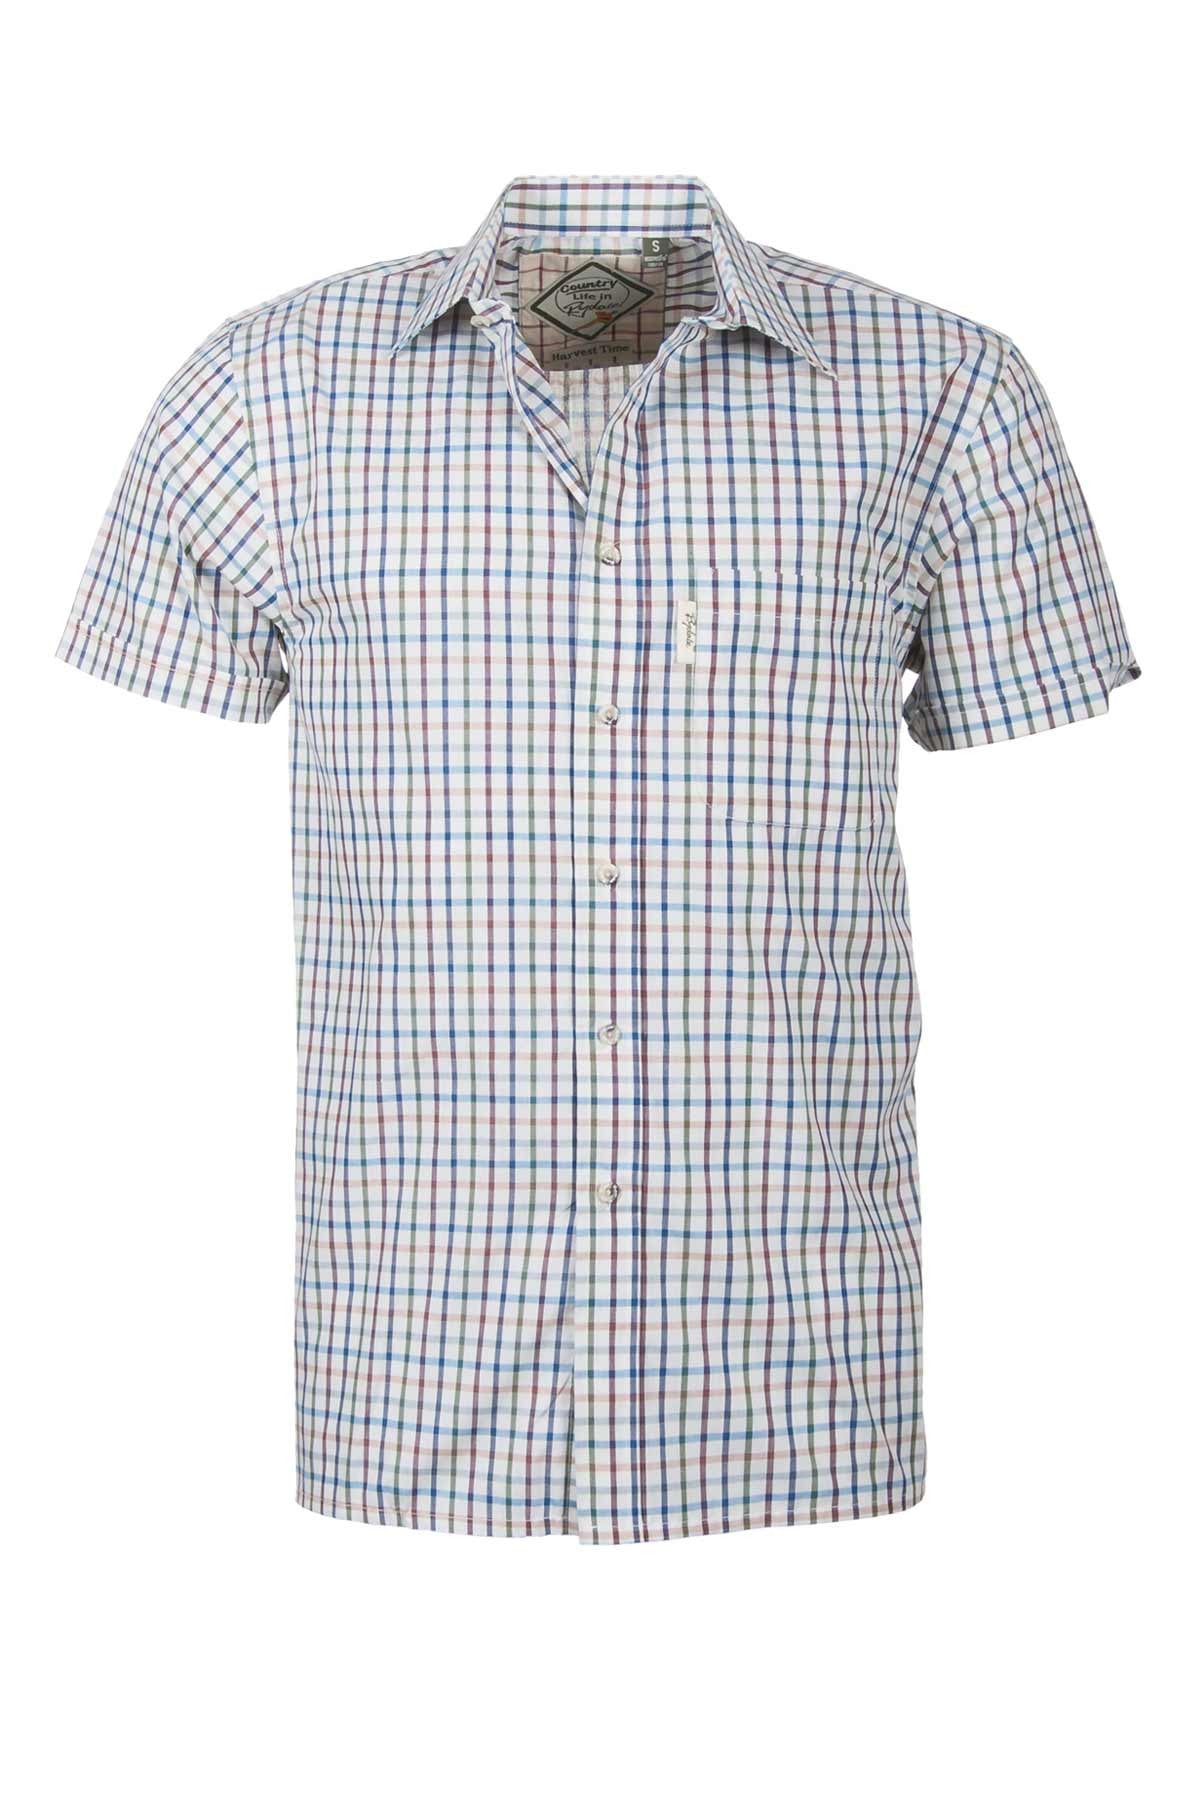 Mens Short Sleeved Check Shirts UK | Checked Shirts | Rydale